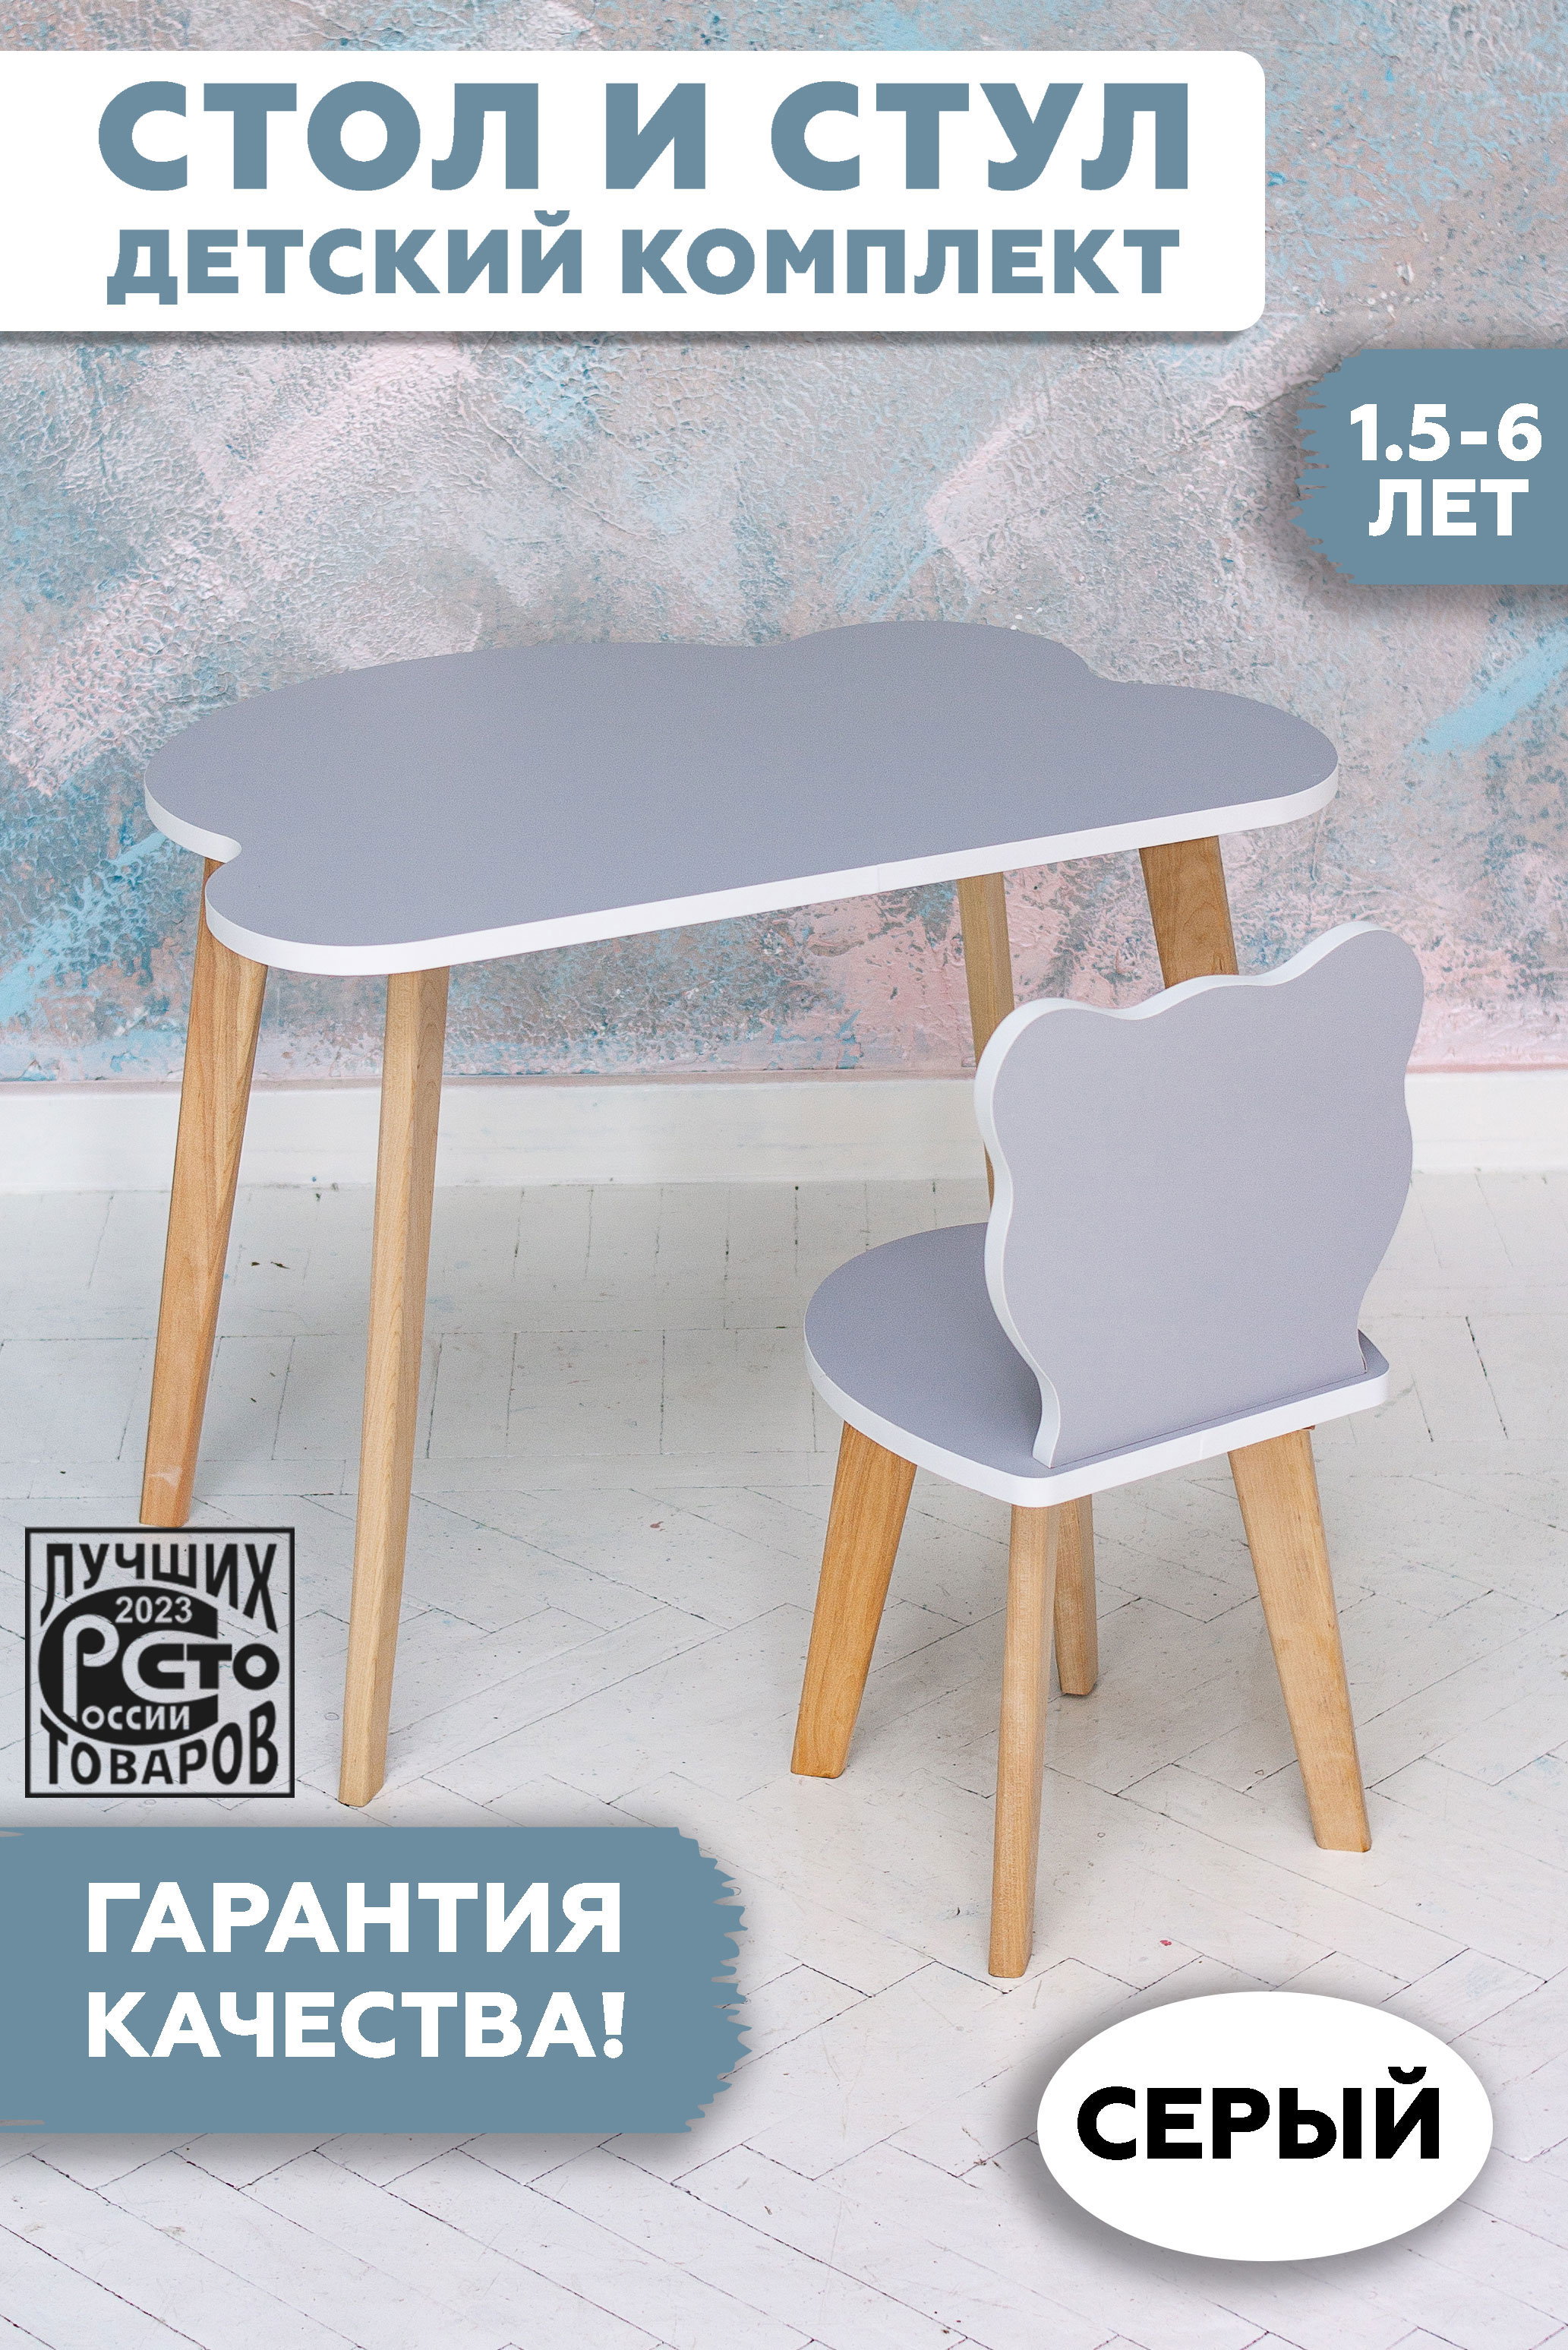 Комплект детской мебели RuLes стул мишка и стол облако детский, серый 12622 растущий детский комплект мебели стол стул